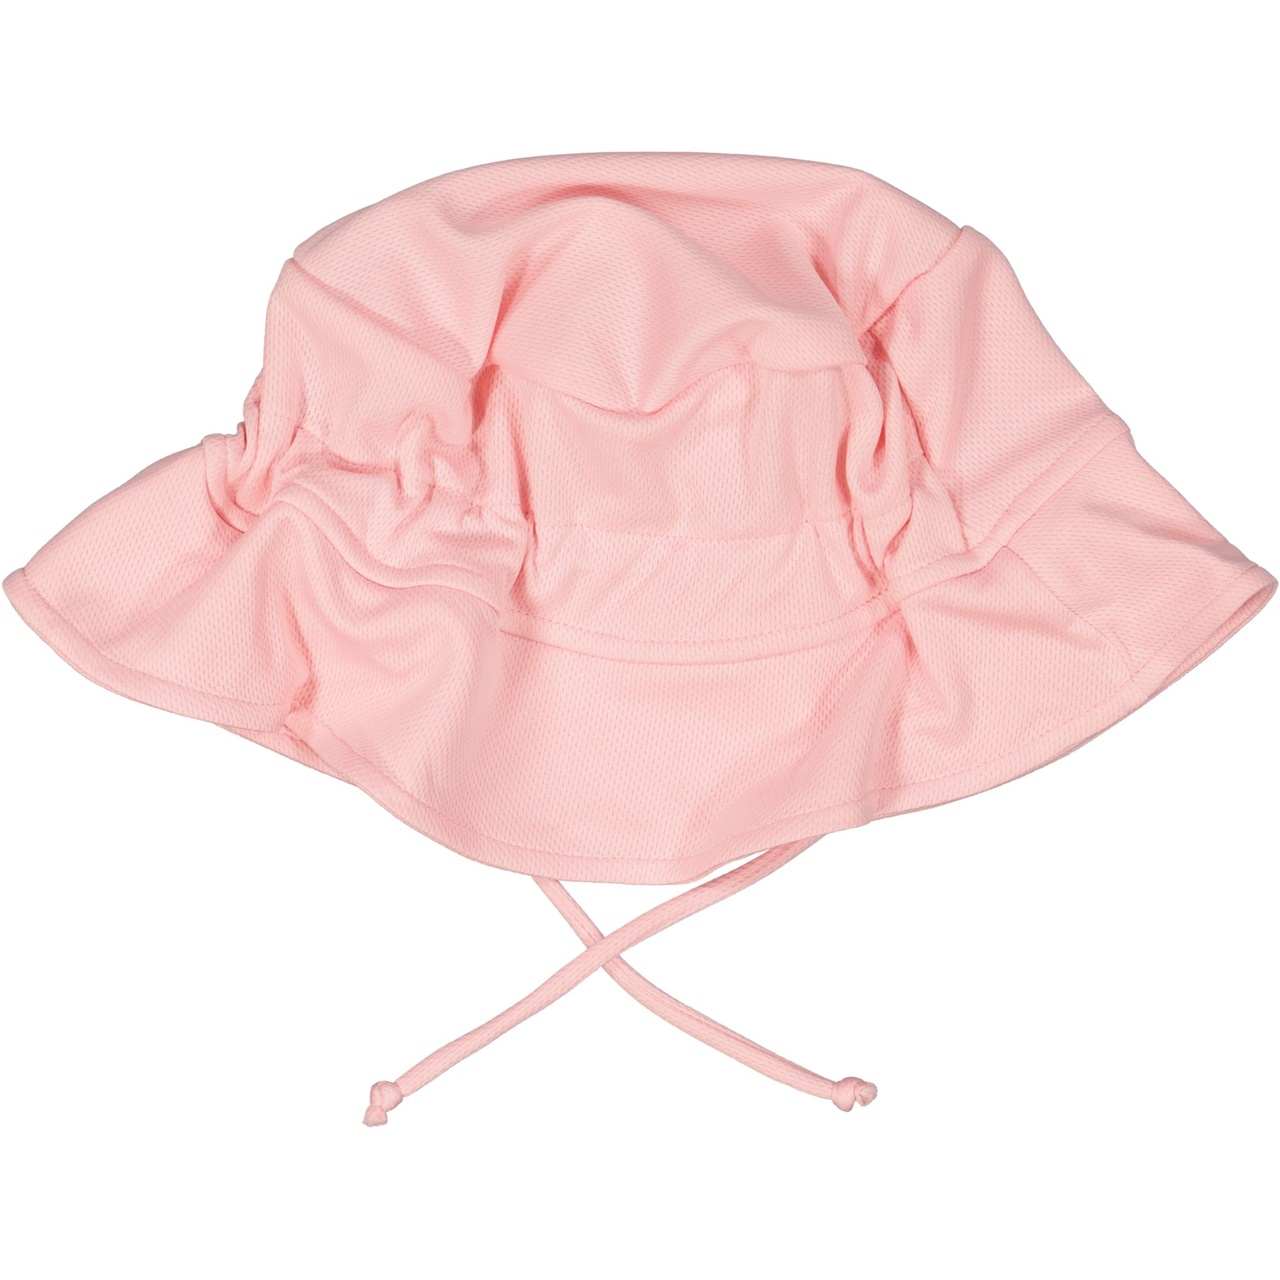 UV Sunny hat Pink  2-6Y